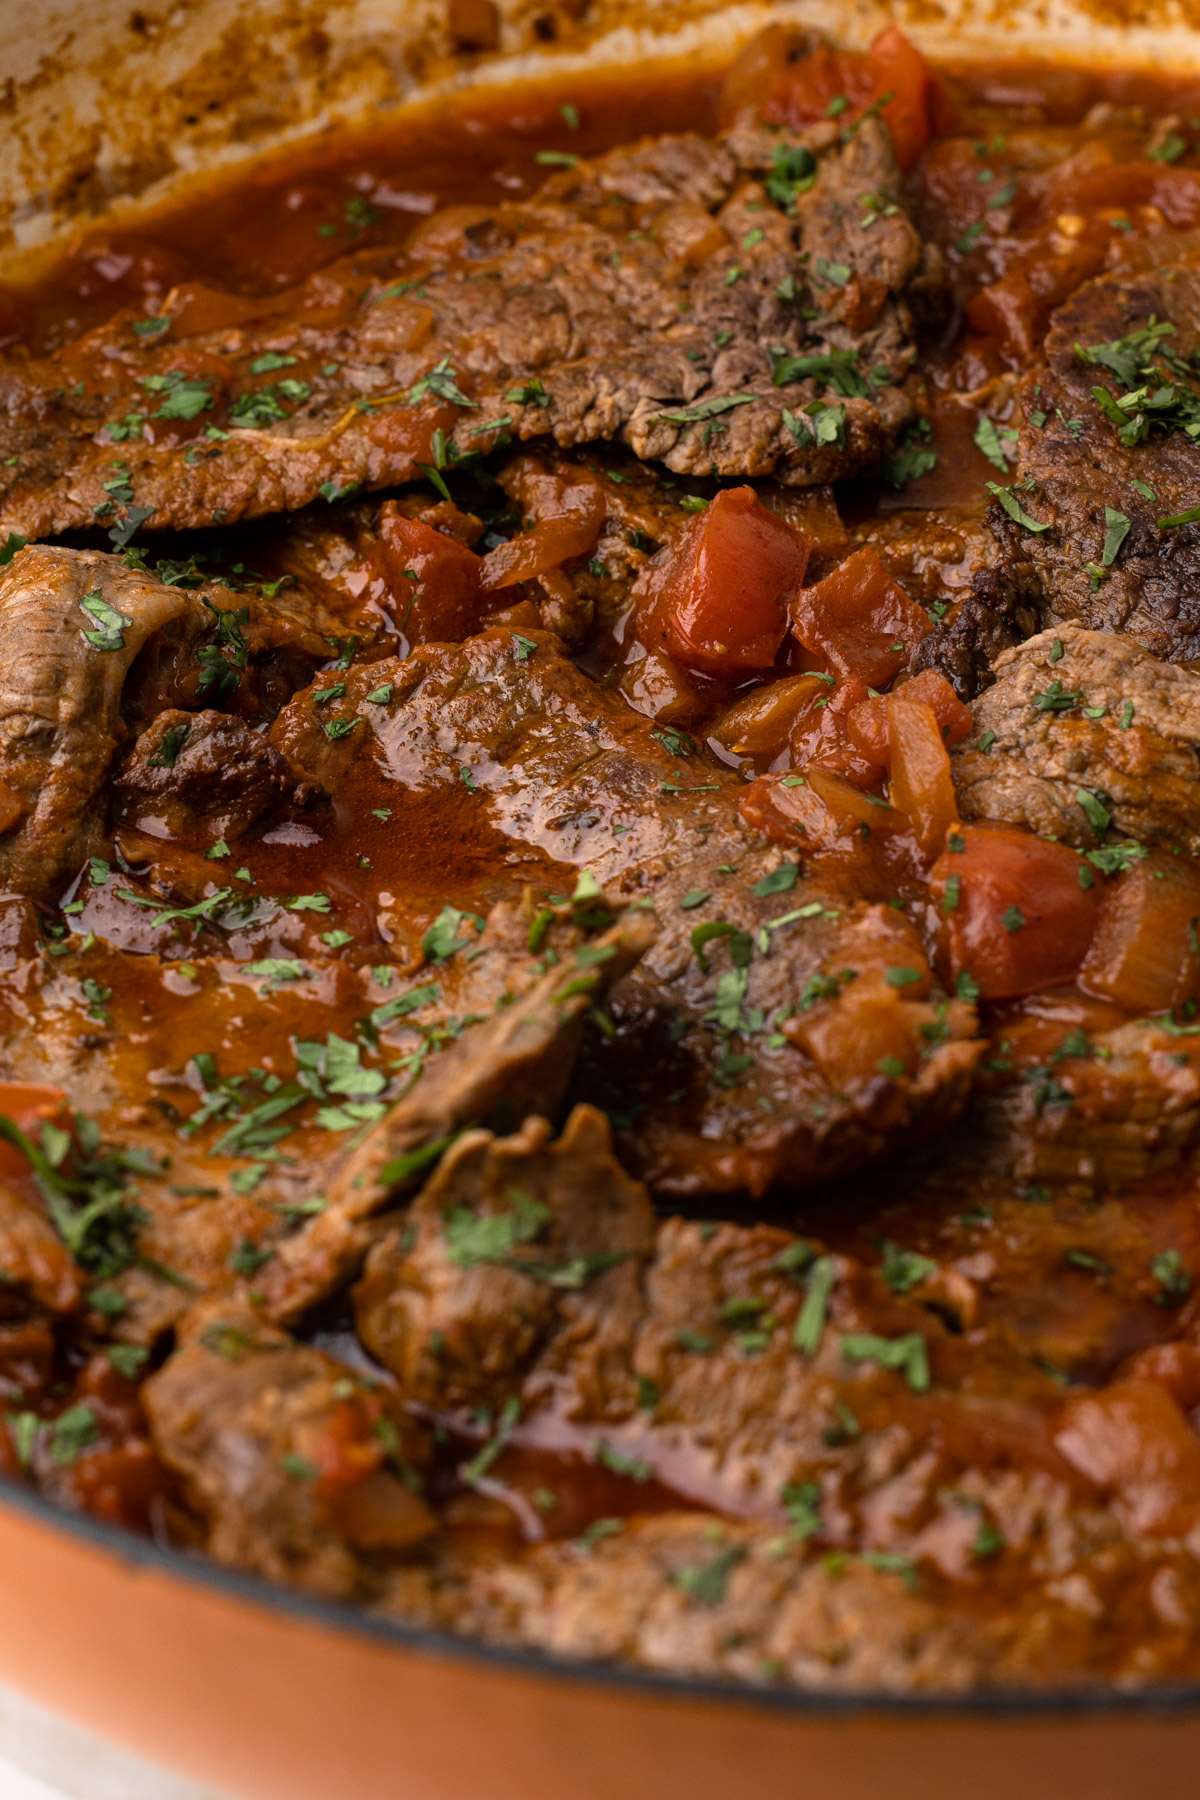 A close up of carne en bistec.